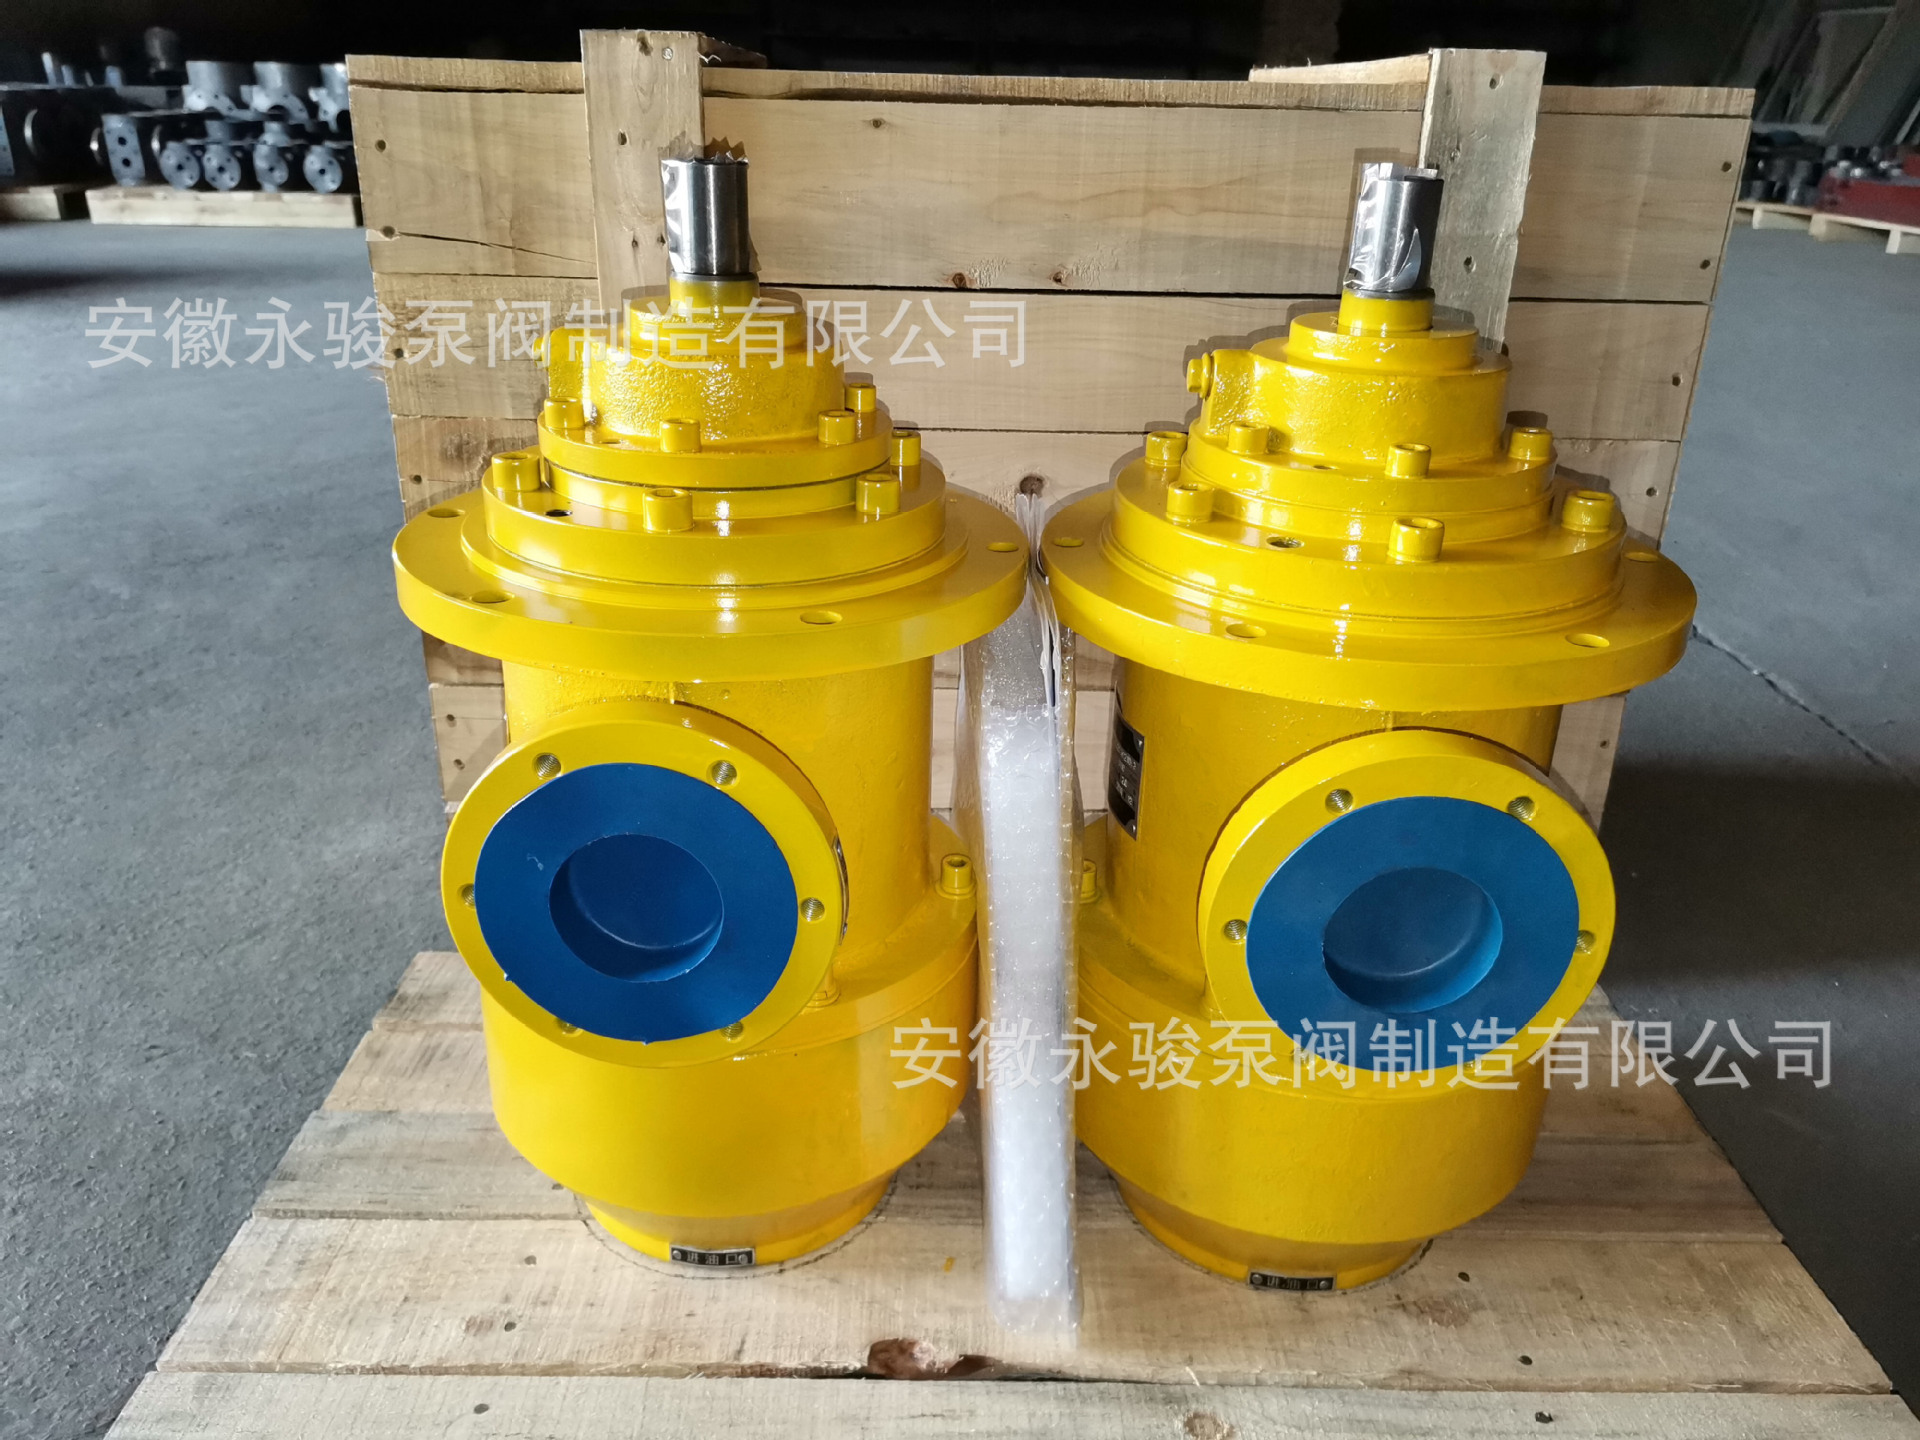 黄山螺杆泵 HSJ210-46 浸没式三螺杆泵 润滑系统螺杆泵 安徽永骏